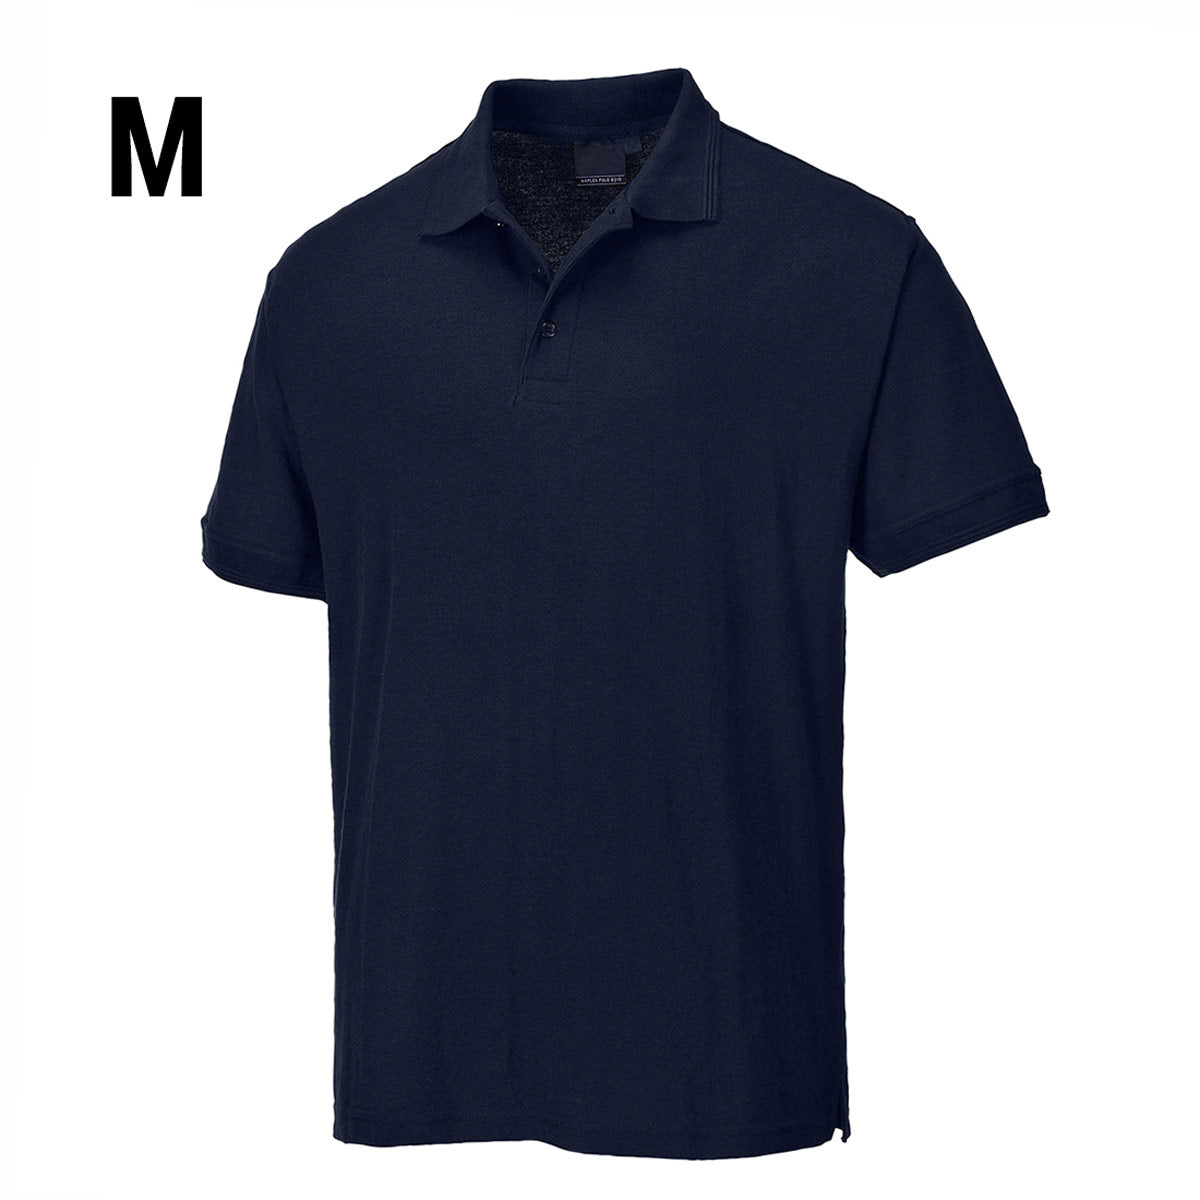 Poloskjorte til menn - Dark Navy - Størrelse: M